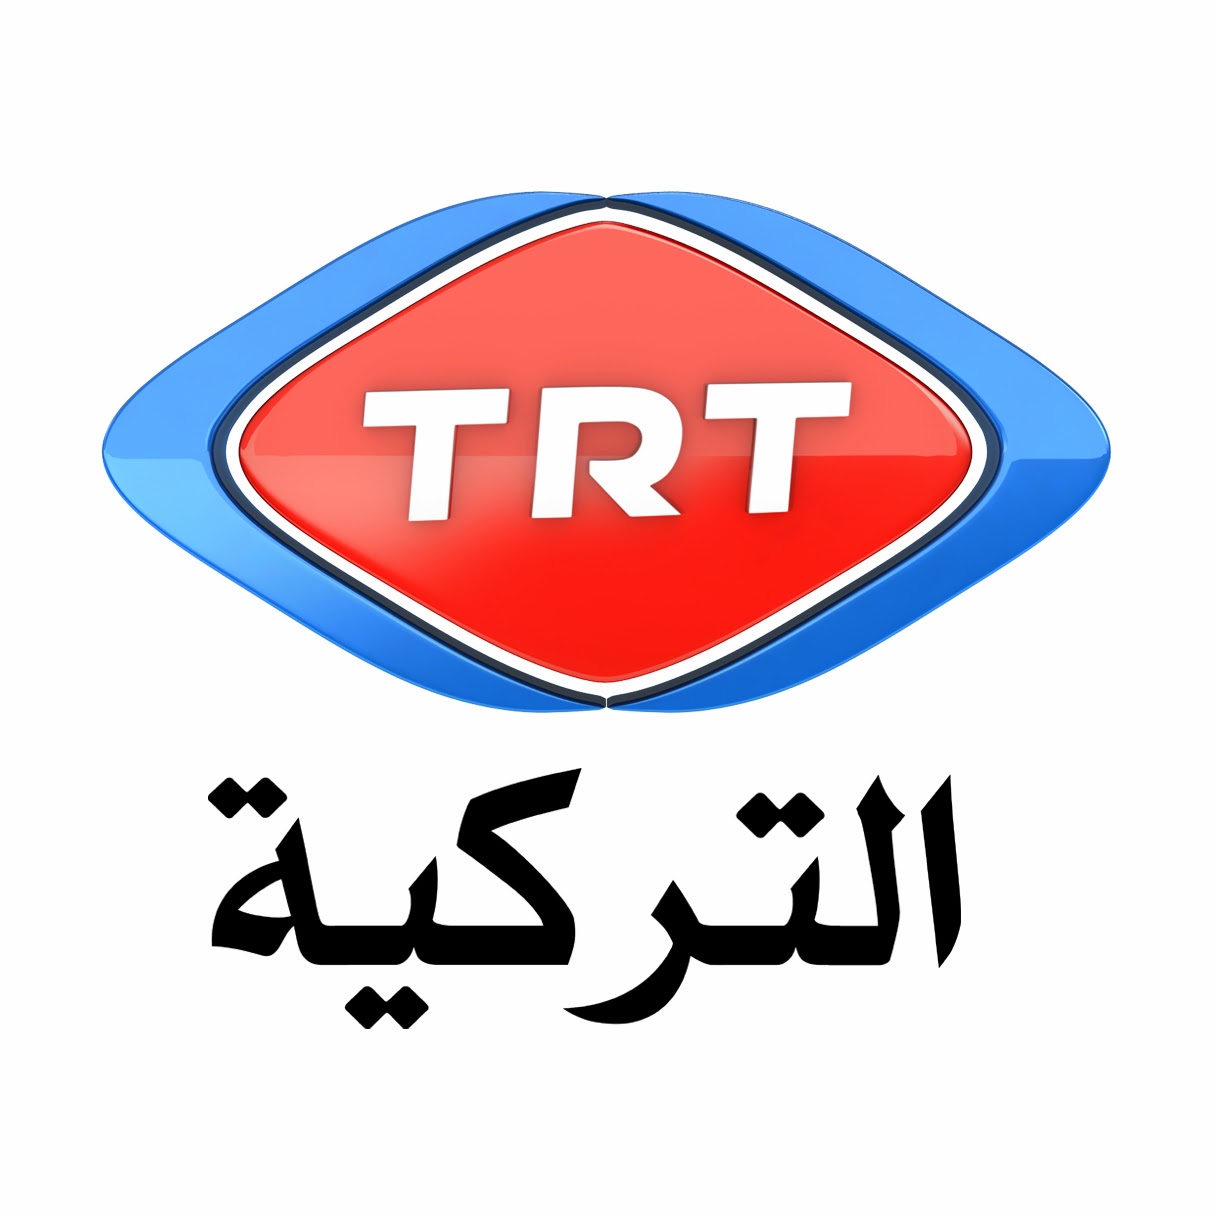 Trt canlı yayın. Логотип канала TRT Music. Логотип канала TV A Турция. TRT Kurdi TV на спутнике. TRT на русском.